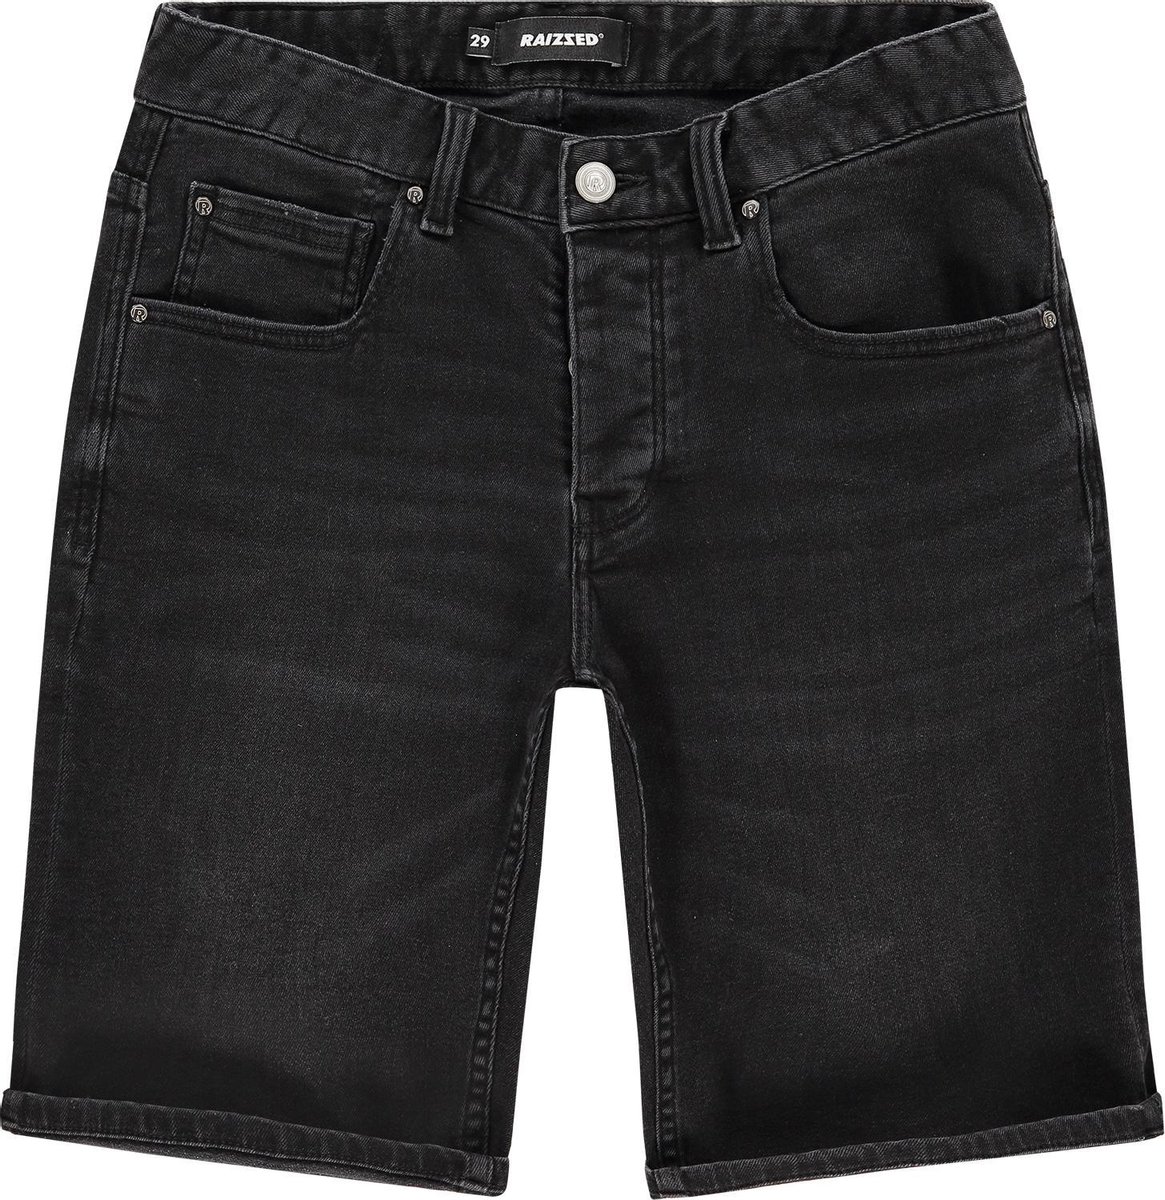 Raizzed Jeans Crest Mannen Jeans - Black Stone - Maat 27